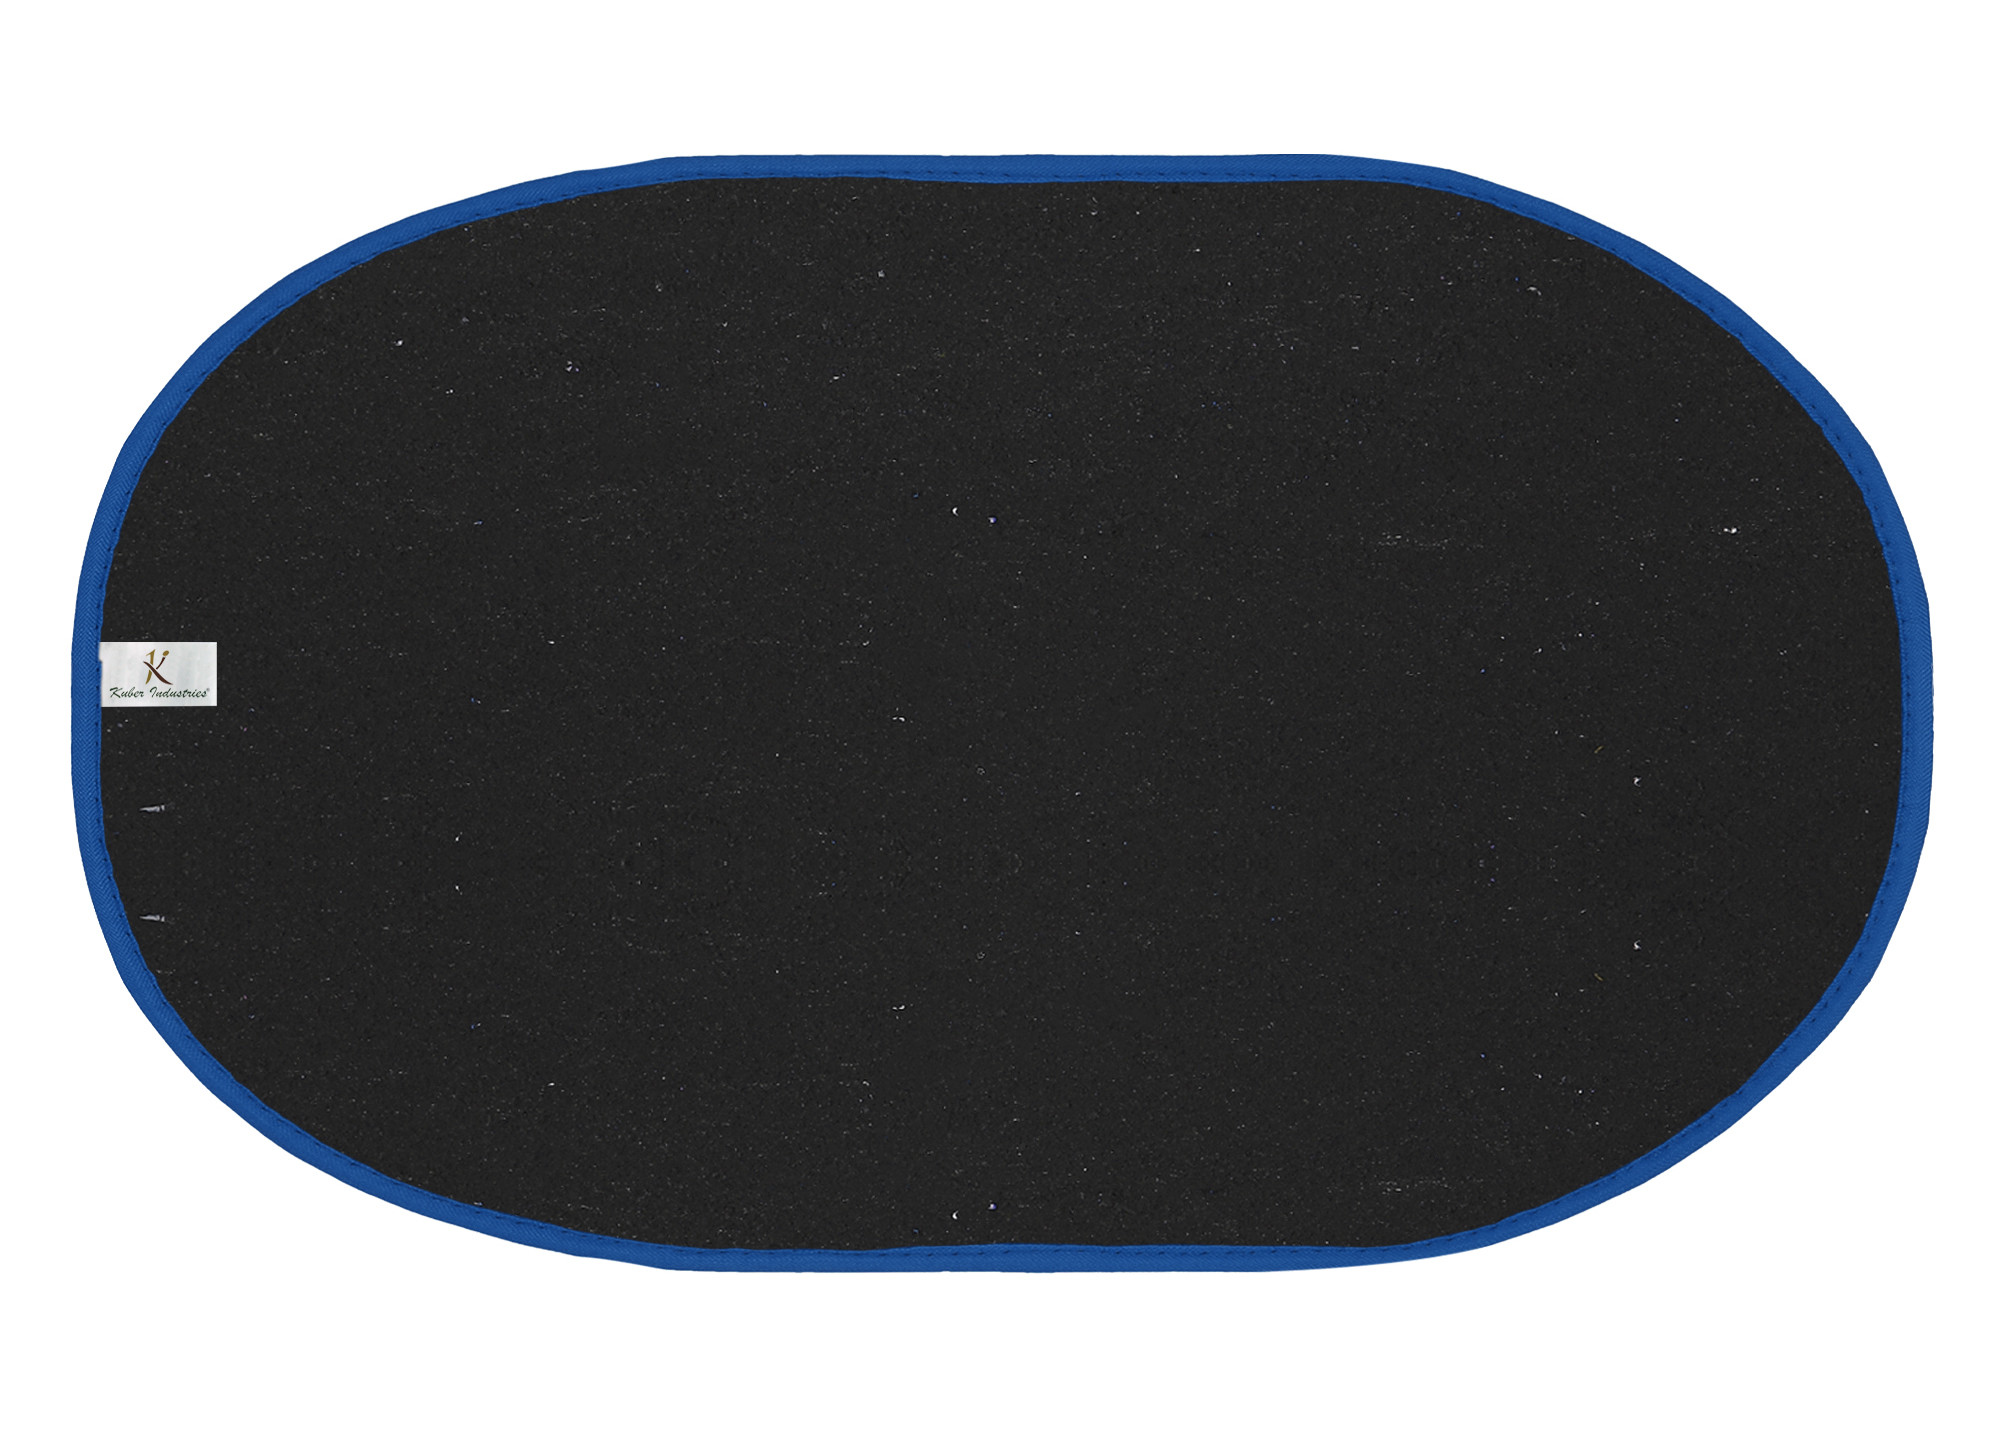 Kuber Industries Oval Shape Durable Microfiber Door Mat, Heavy Duty Doormat, Indoor Outdoor, Easy Clean, Waterproof, Low-Profile Mats for Entry, Patio, Garage (Set Of 3,14'' x 23'',Green & Grey & Blue)-KUBMRT12141